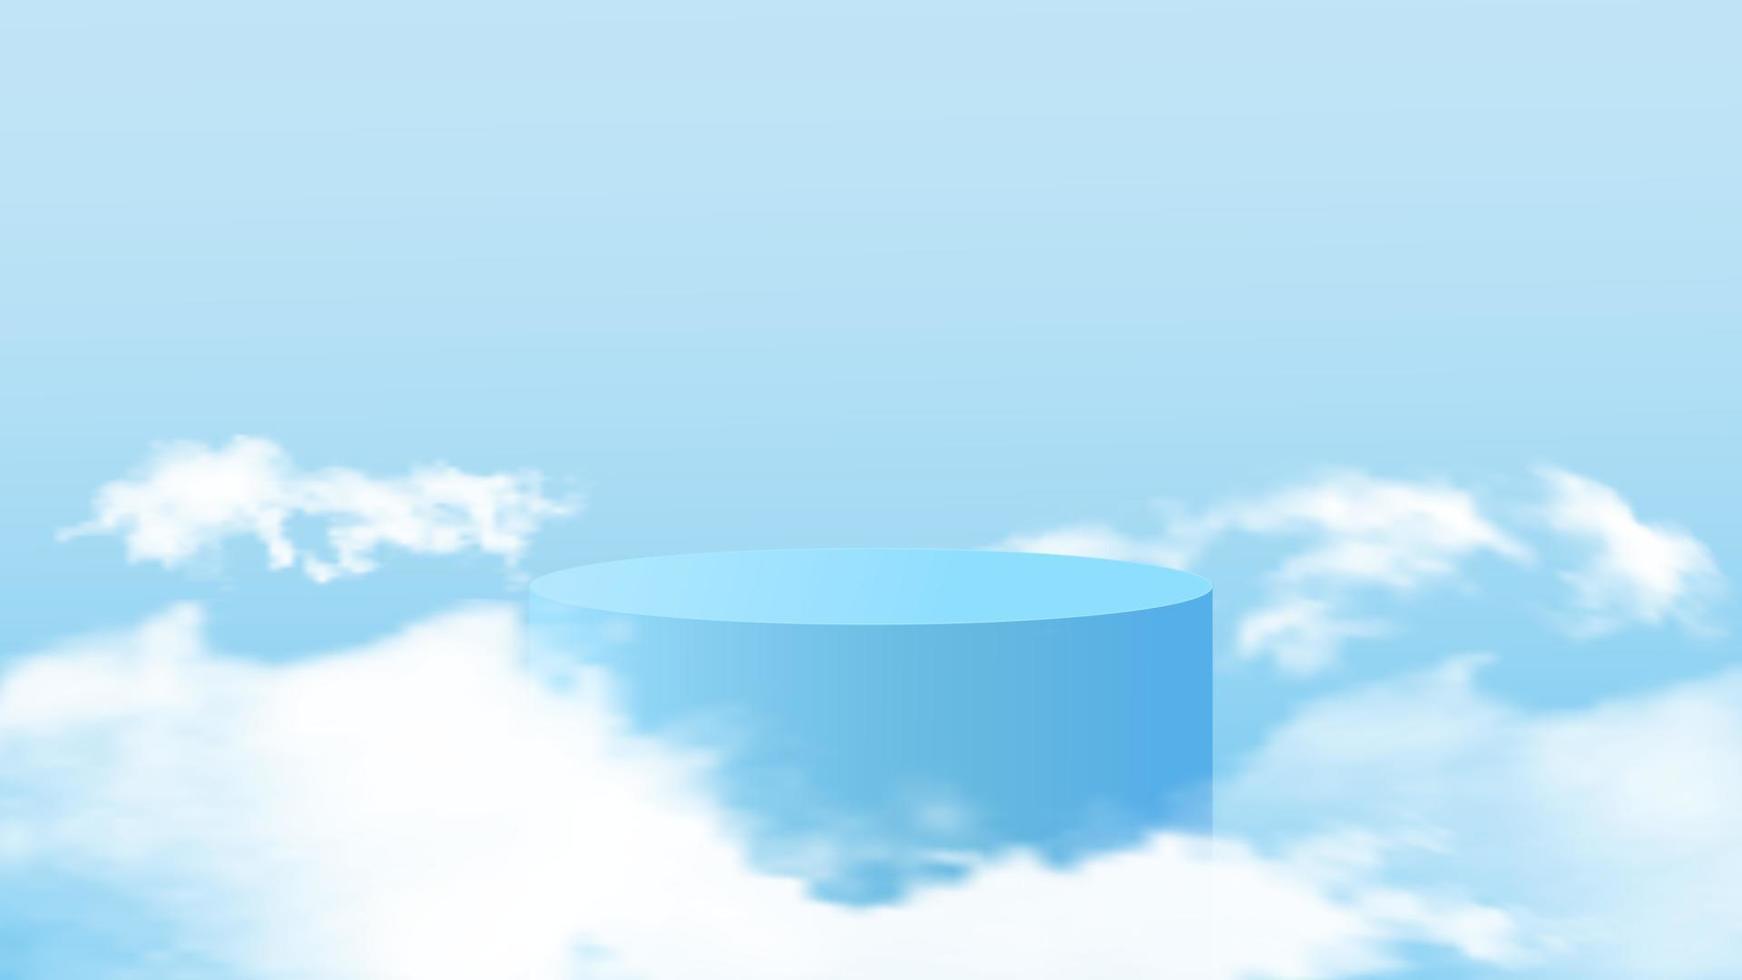 vecteur d'arrière-plan rendu bleu 3d avec podium et scène nuageuse minimale. fond d'affichage de produit minimal de rendu 3d forme géométrique ciel bleu nuage pastel.illustration vectorielle